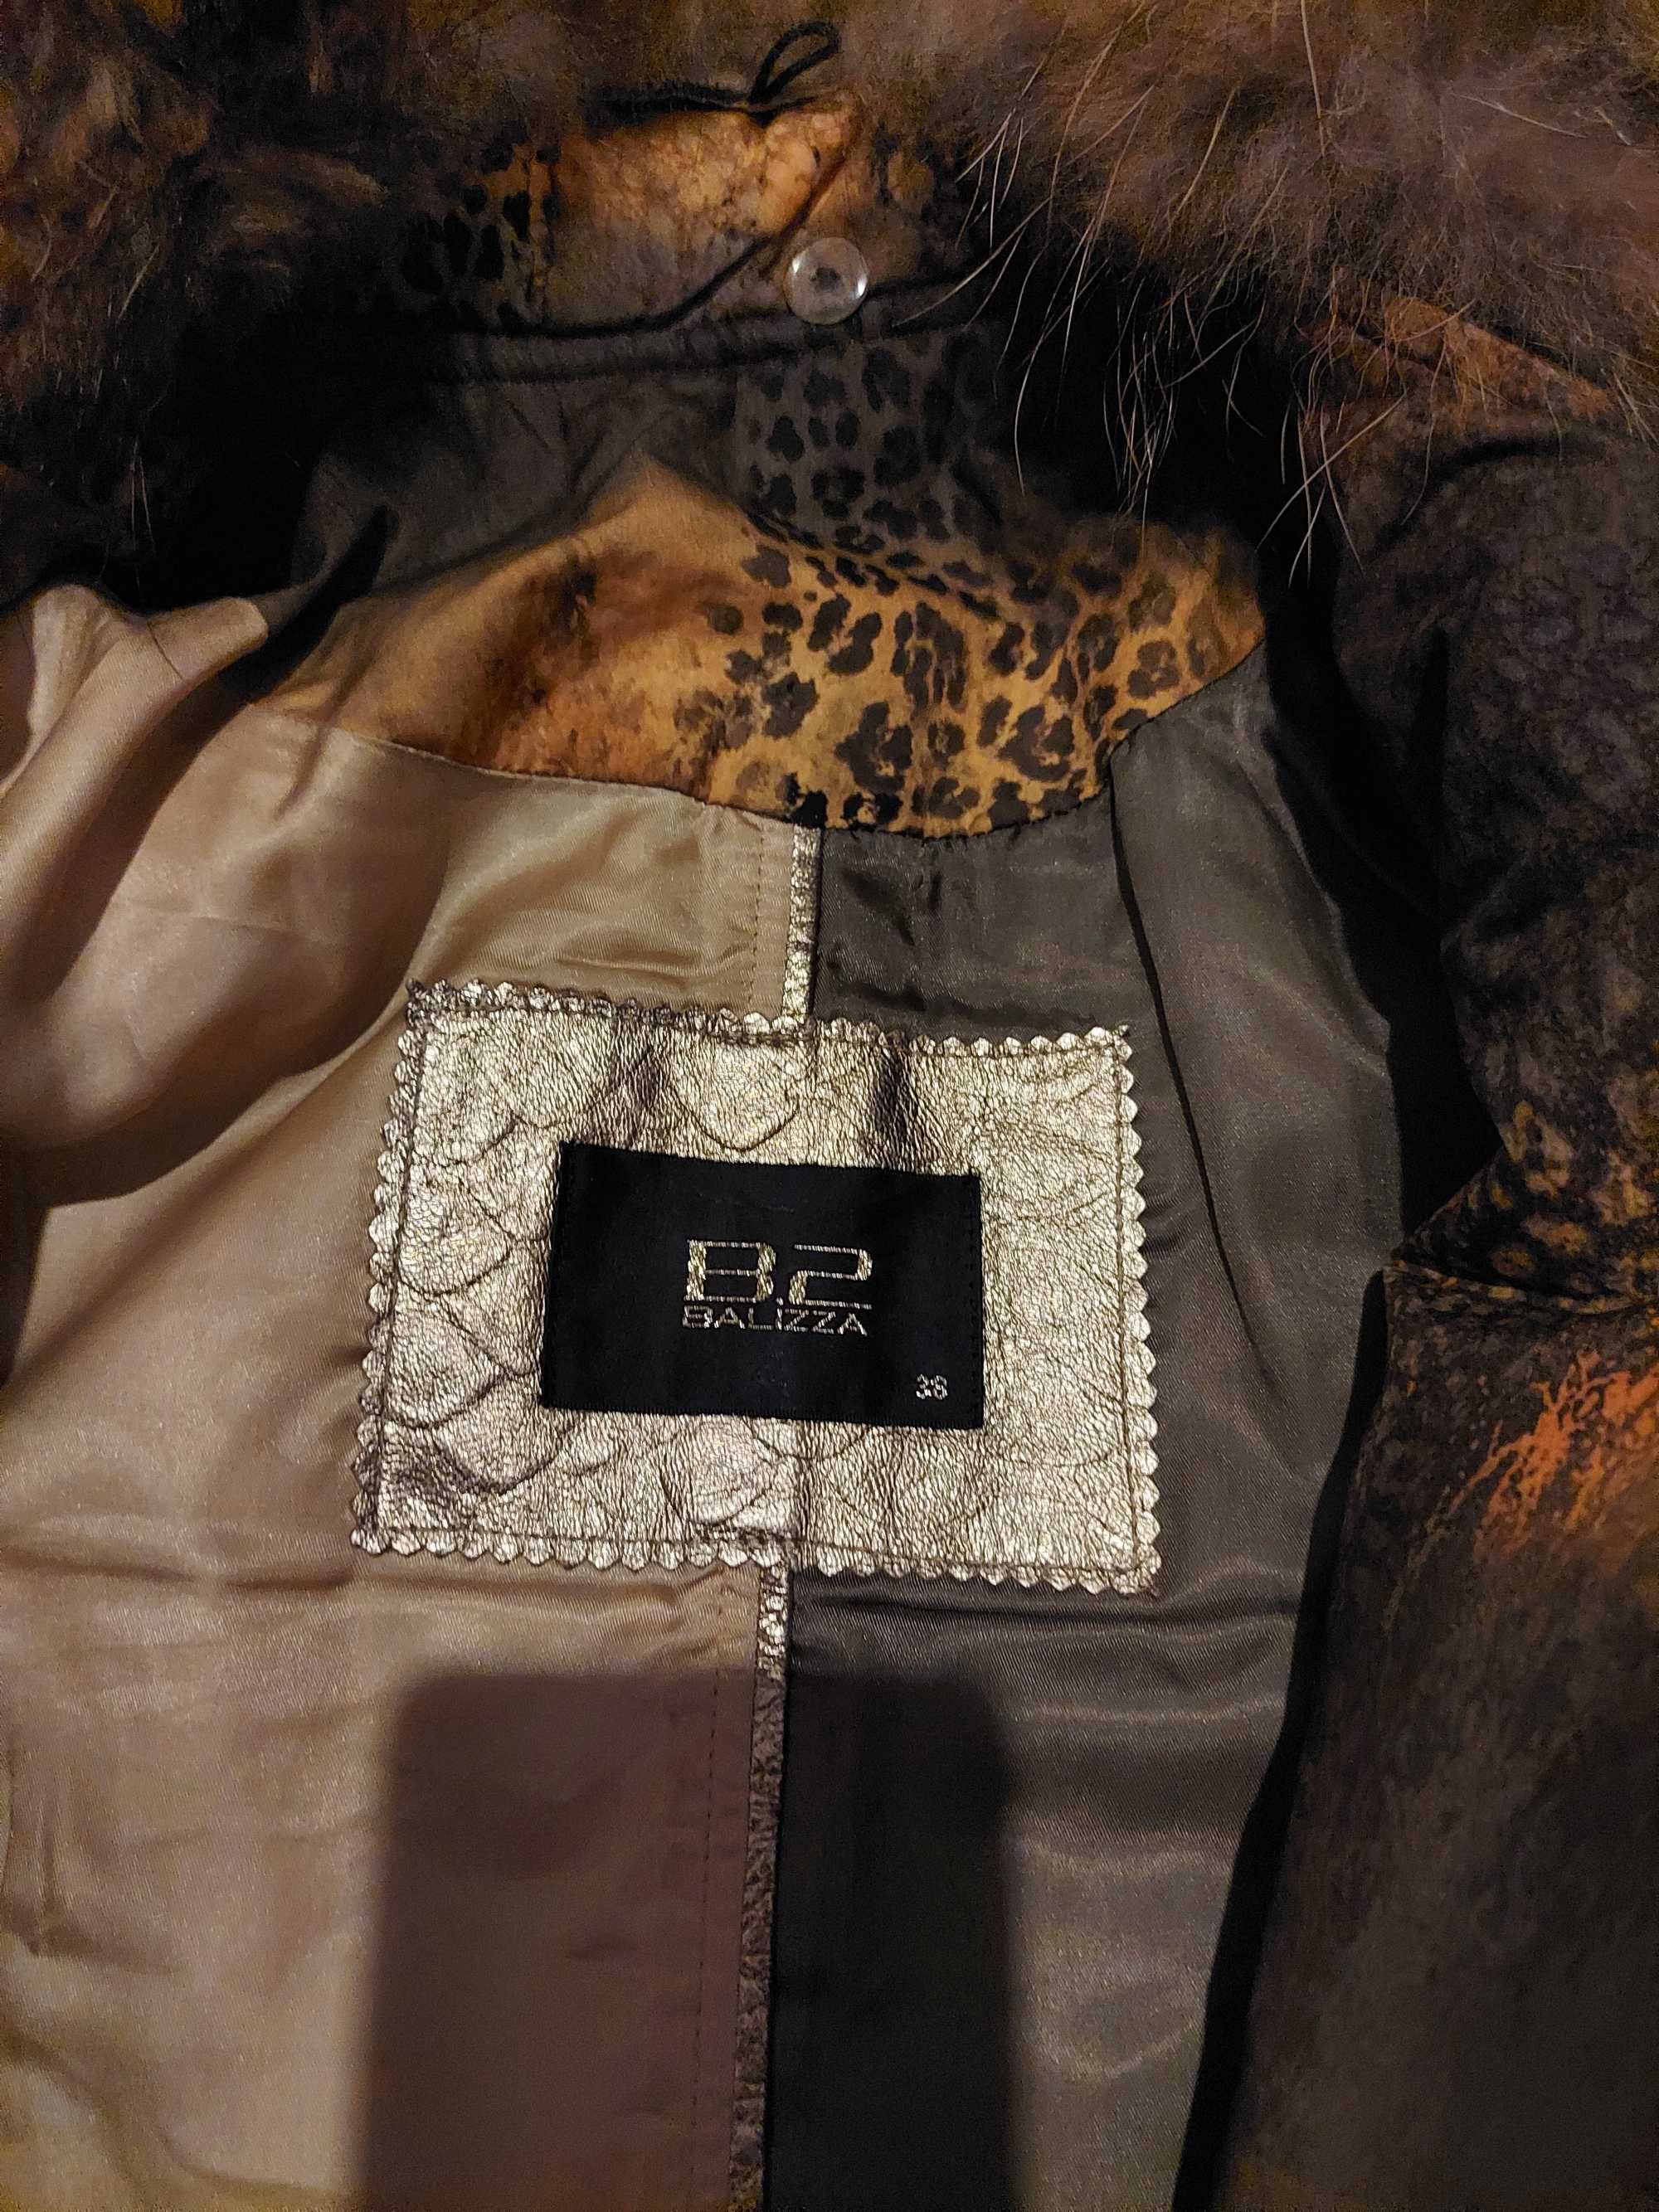 Продам курточку B2, Balizza, 38 размер, натуральный мех